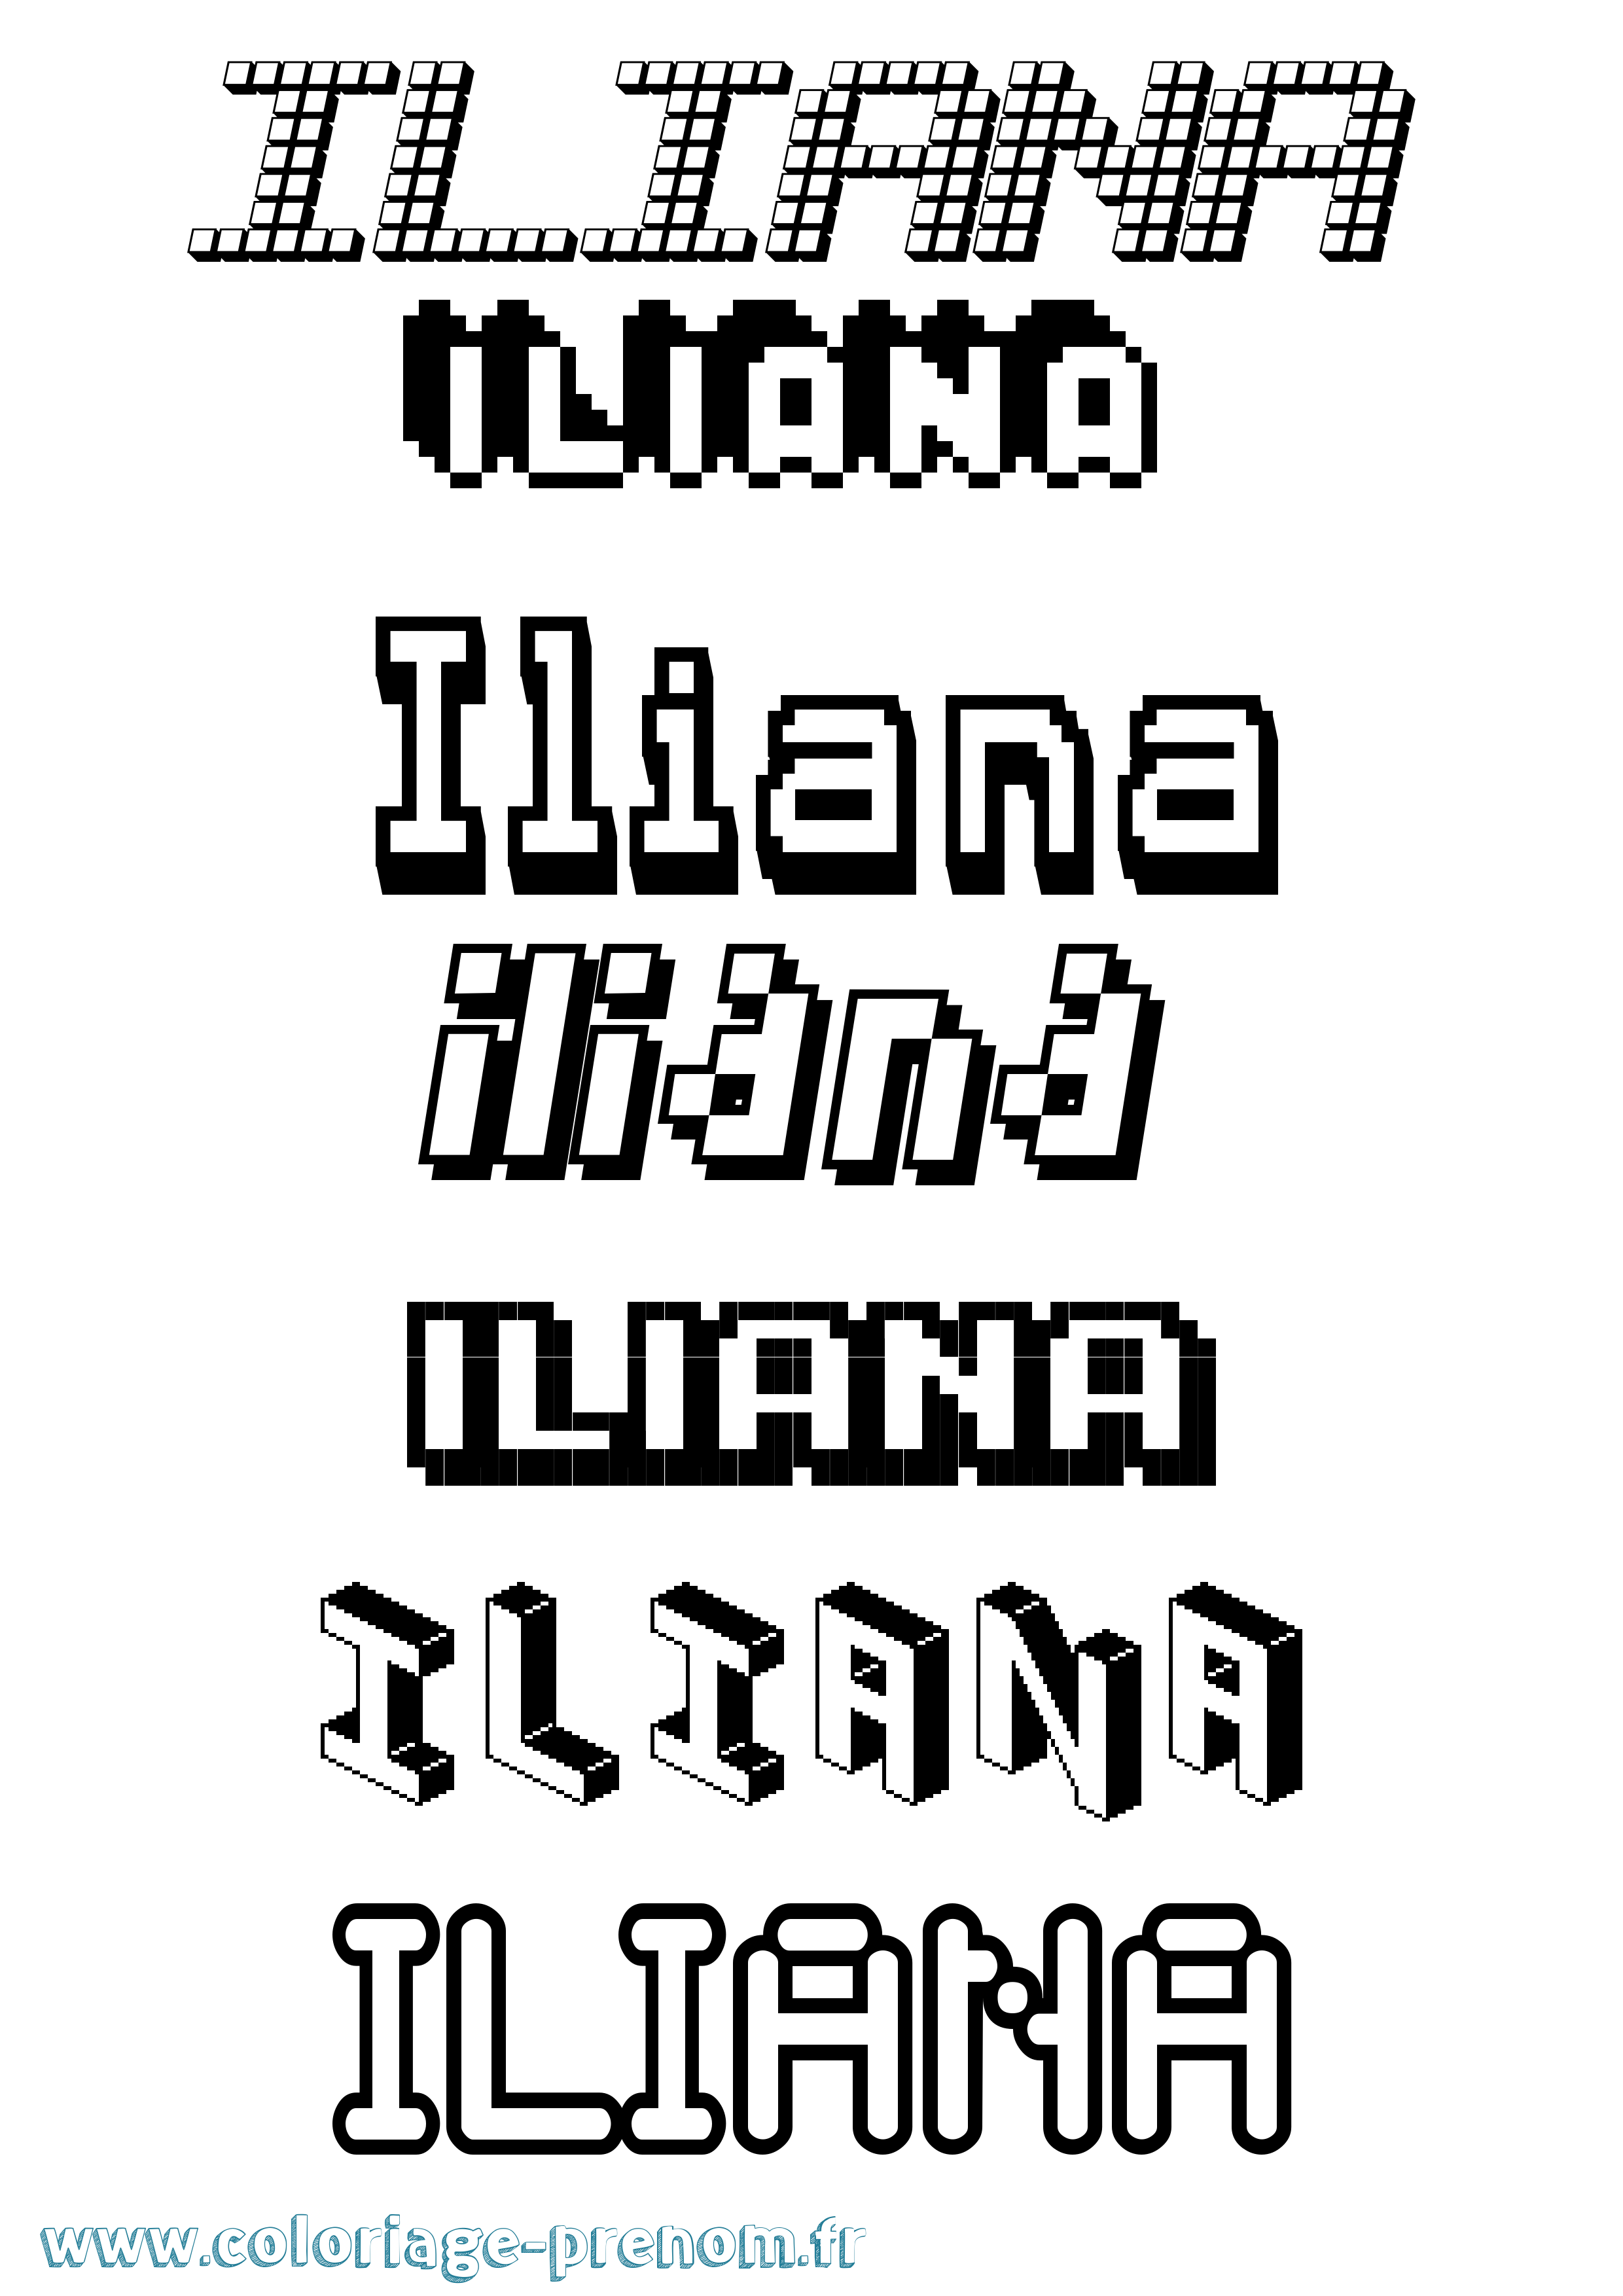 Coloriage prénom Iliana Pixel